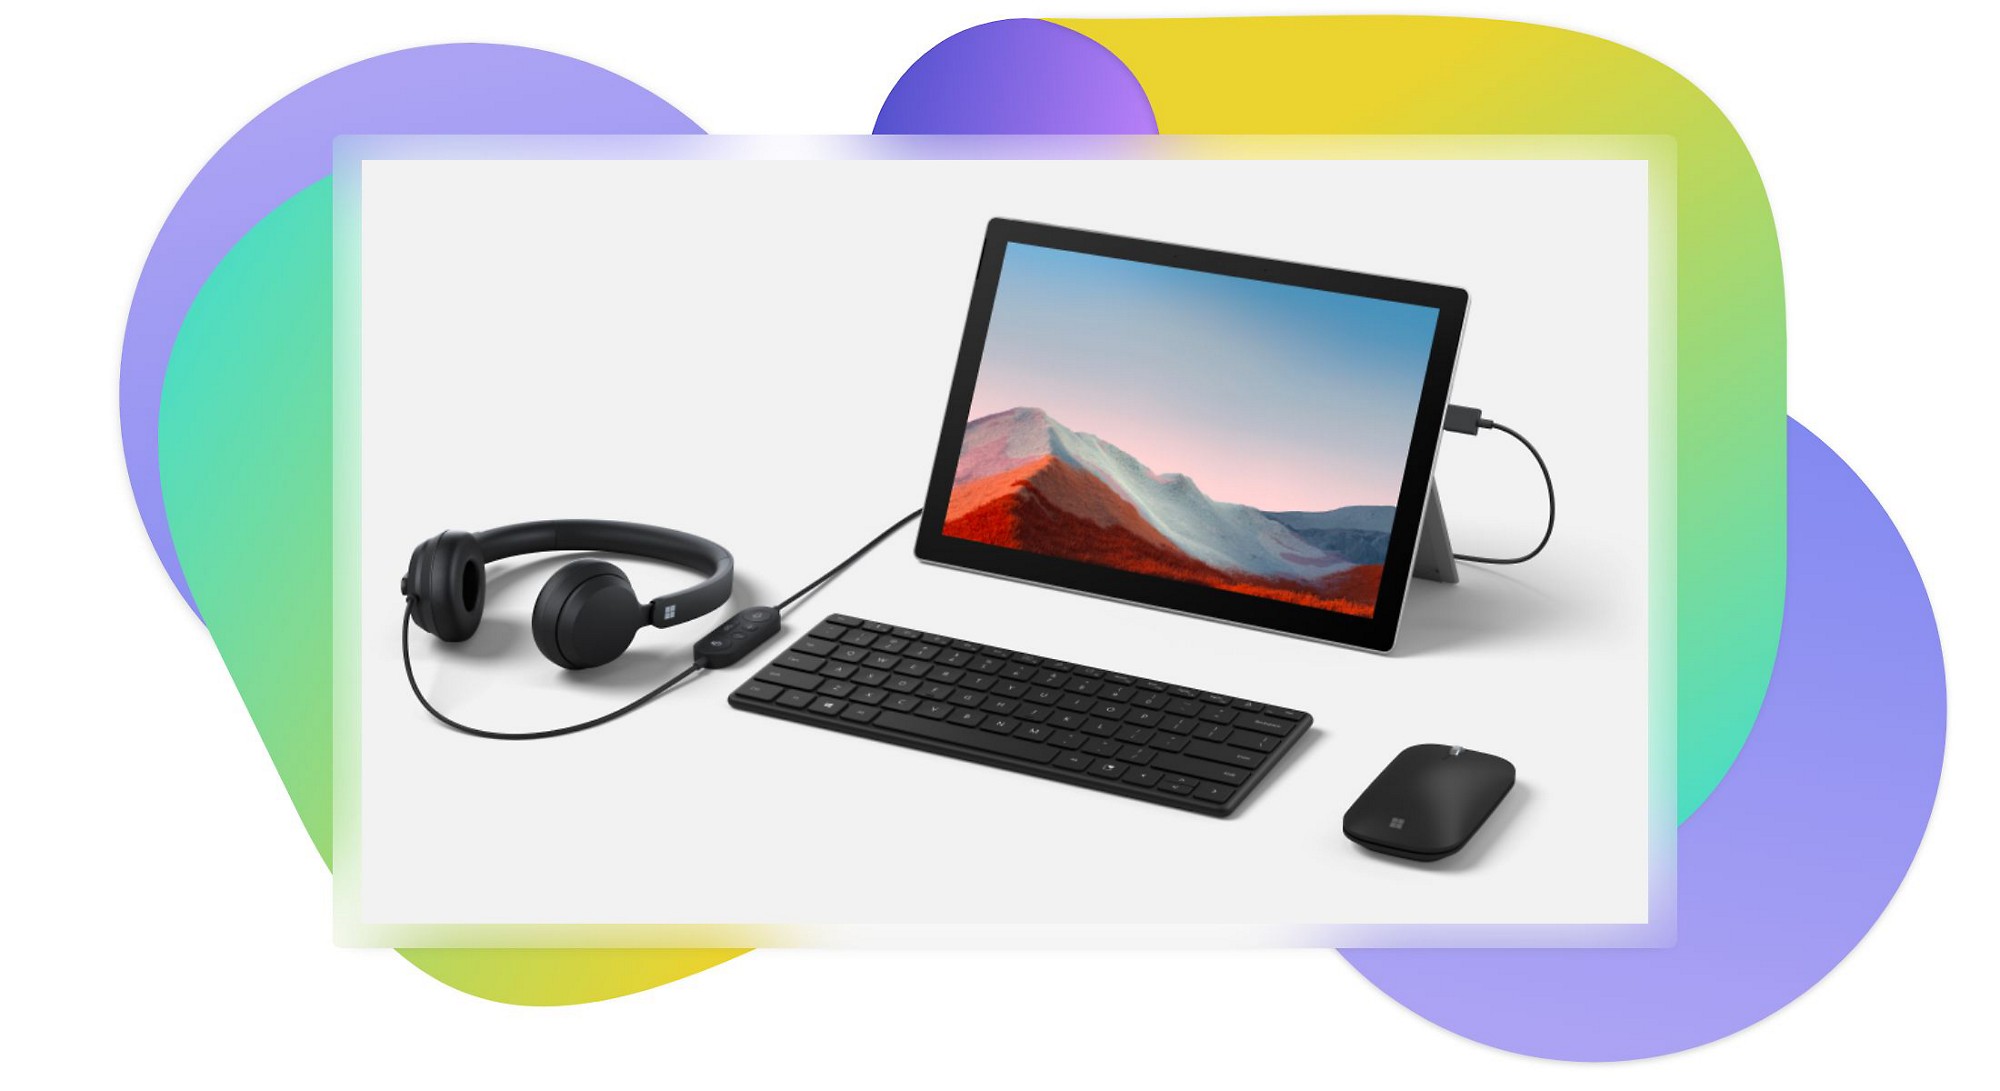 Ein Tablet, das auf einem Ständer steht, eine Bluetooth-Tastatur, ein an das Tablet angeschlossenes Headset und eine Bluetooth-Maus